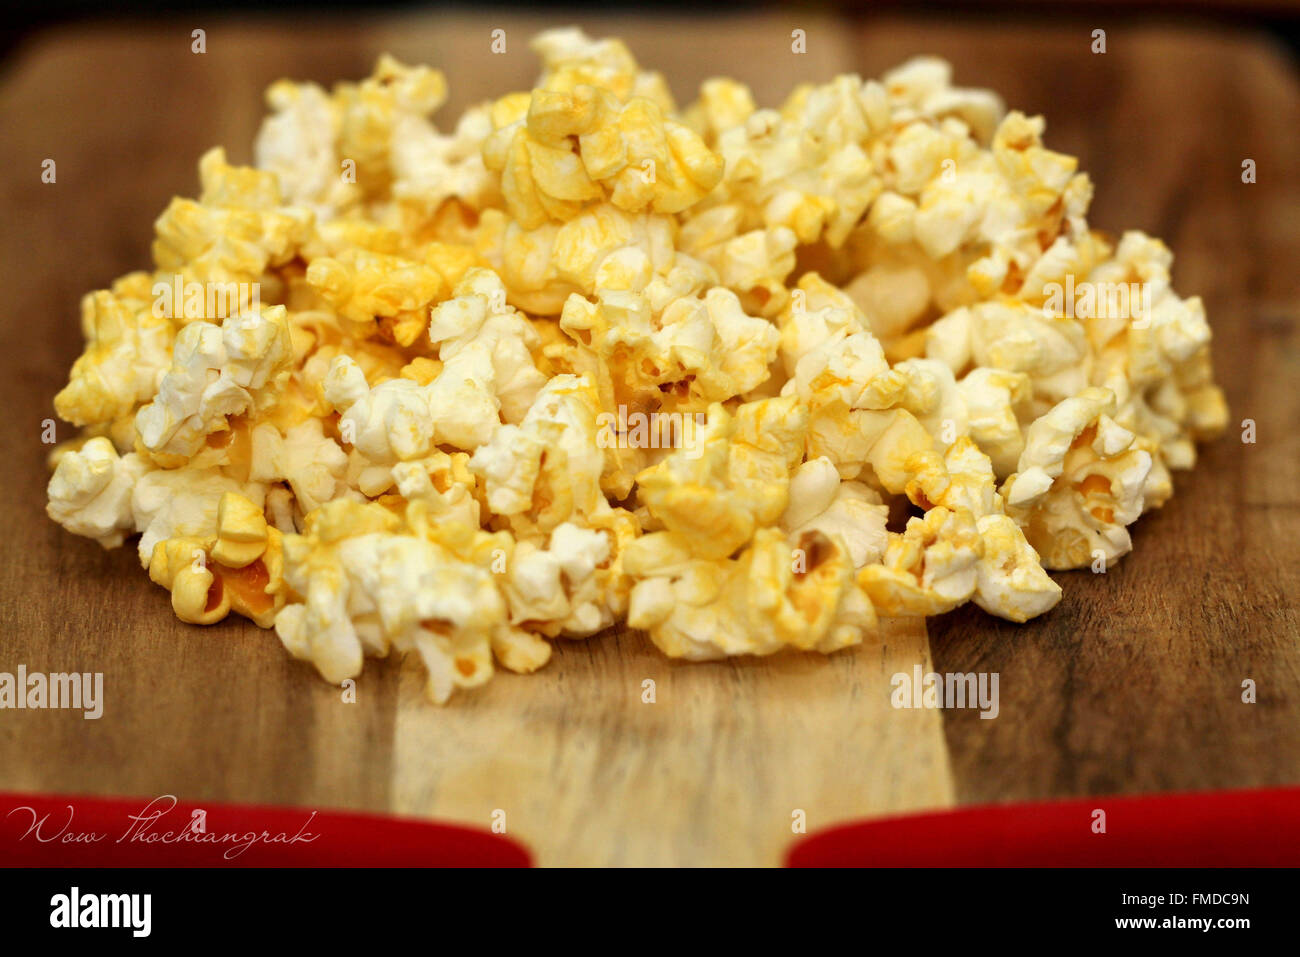 Popped popcorn on wood background Stock Photo